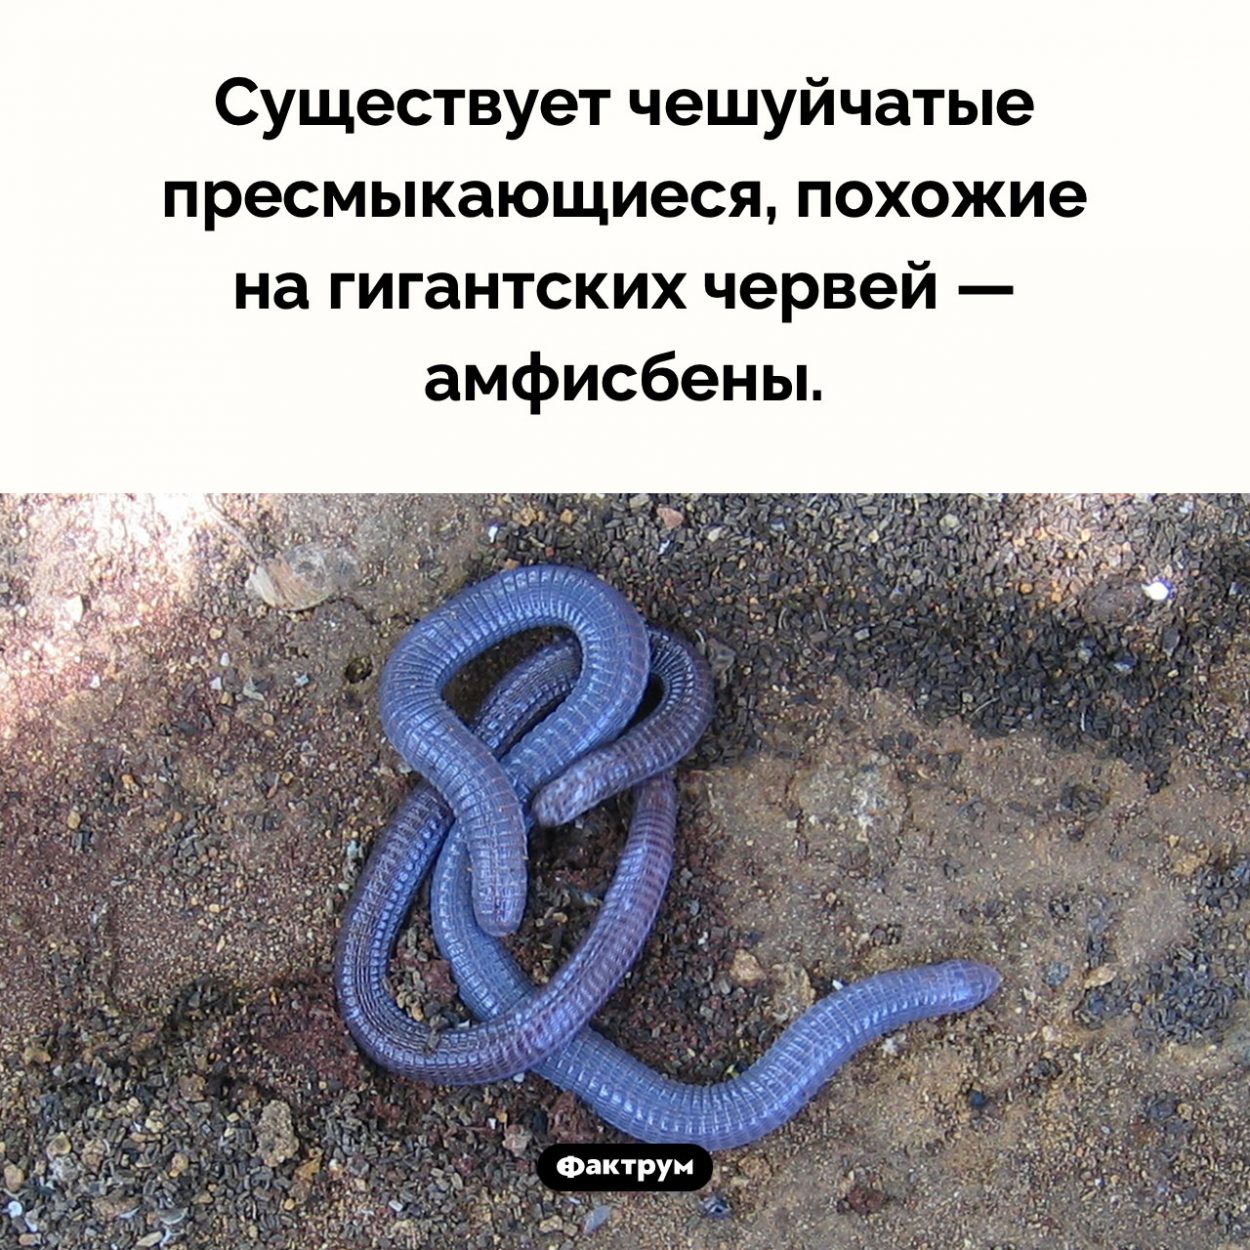 Пресмыкающиеся-черви. Существует чешуйчатые пресмыкающиеся, похожие на гигантских червей — амфисбены.